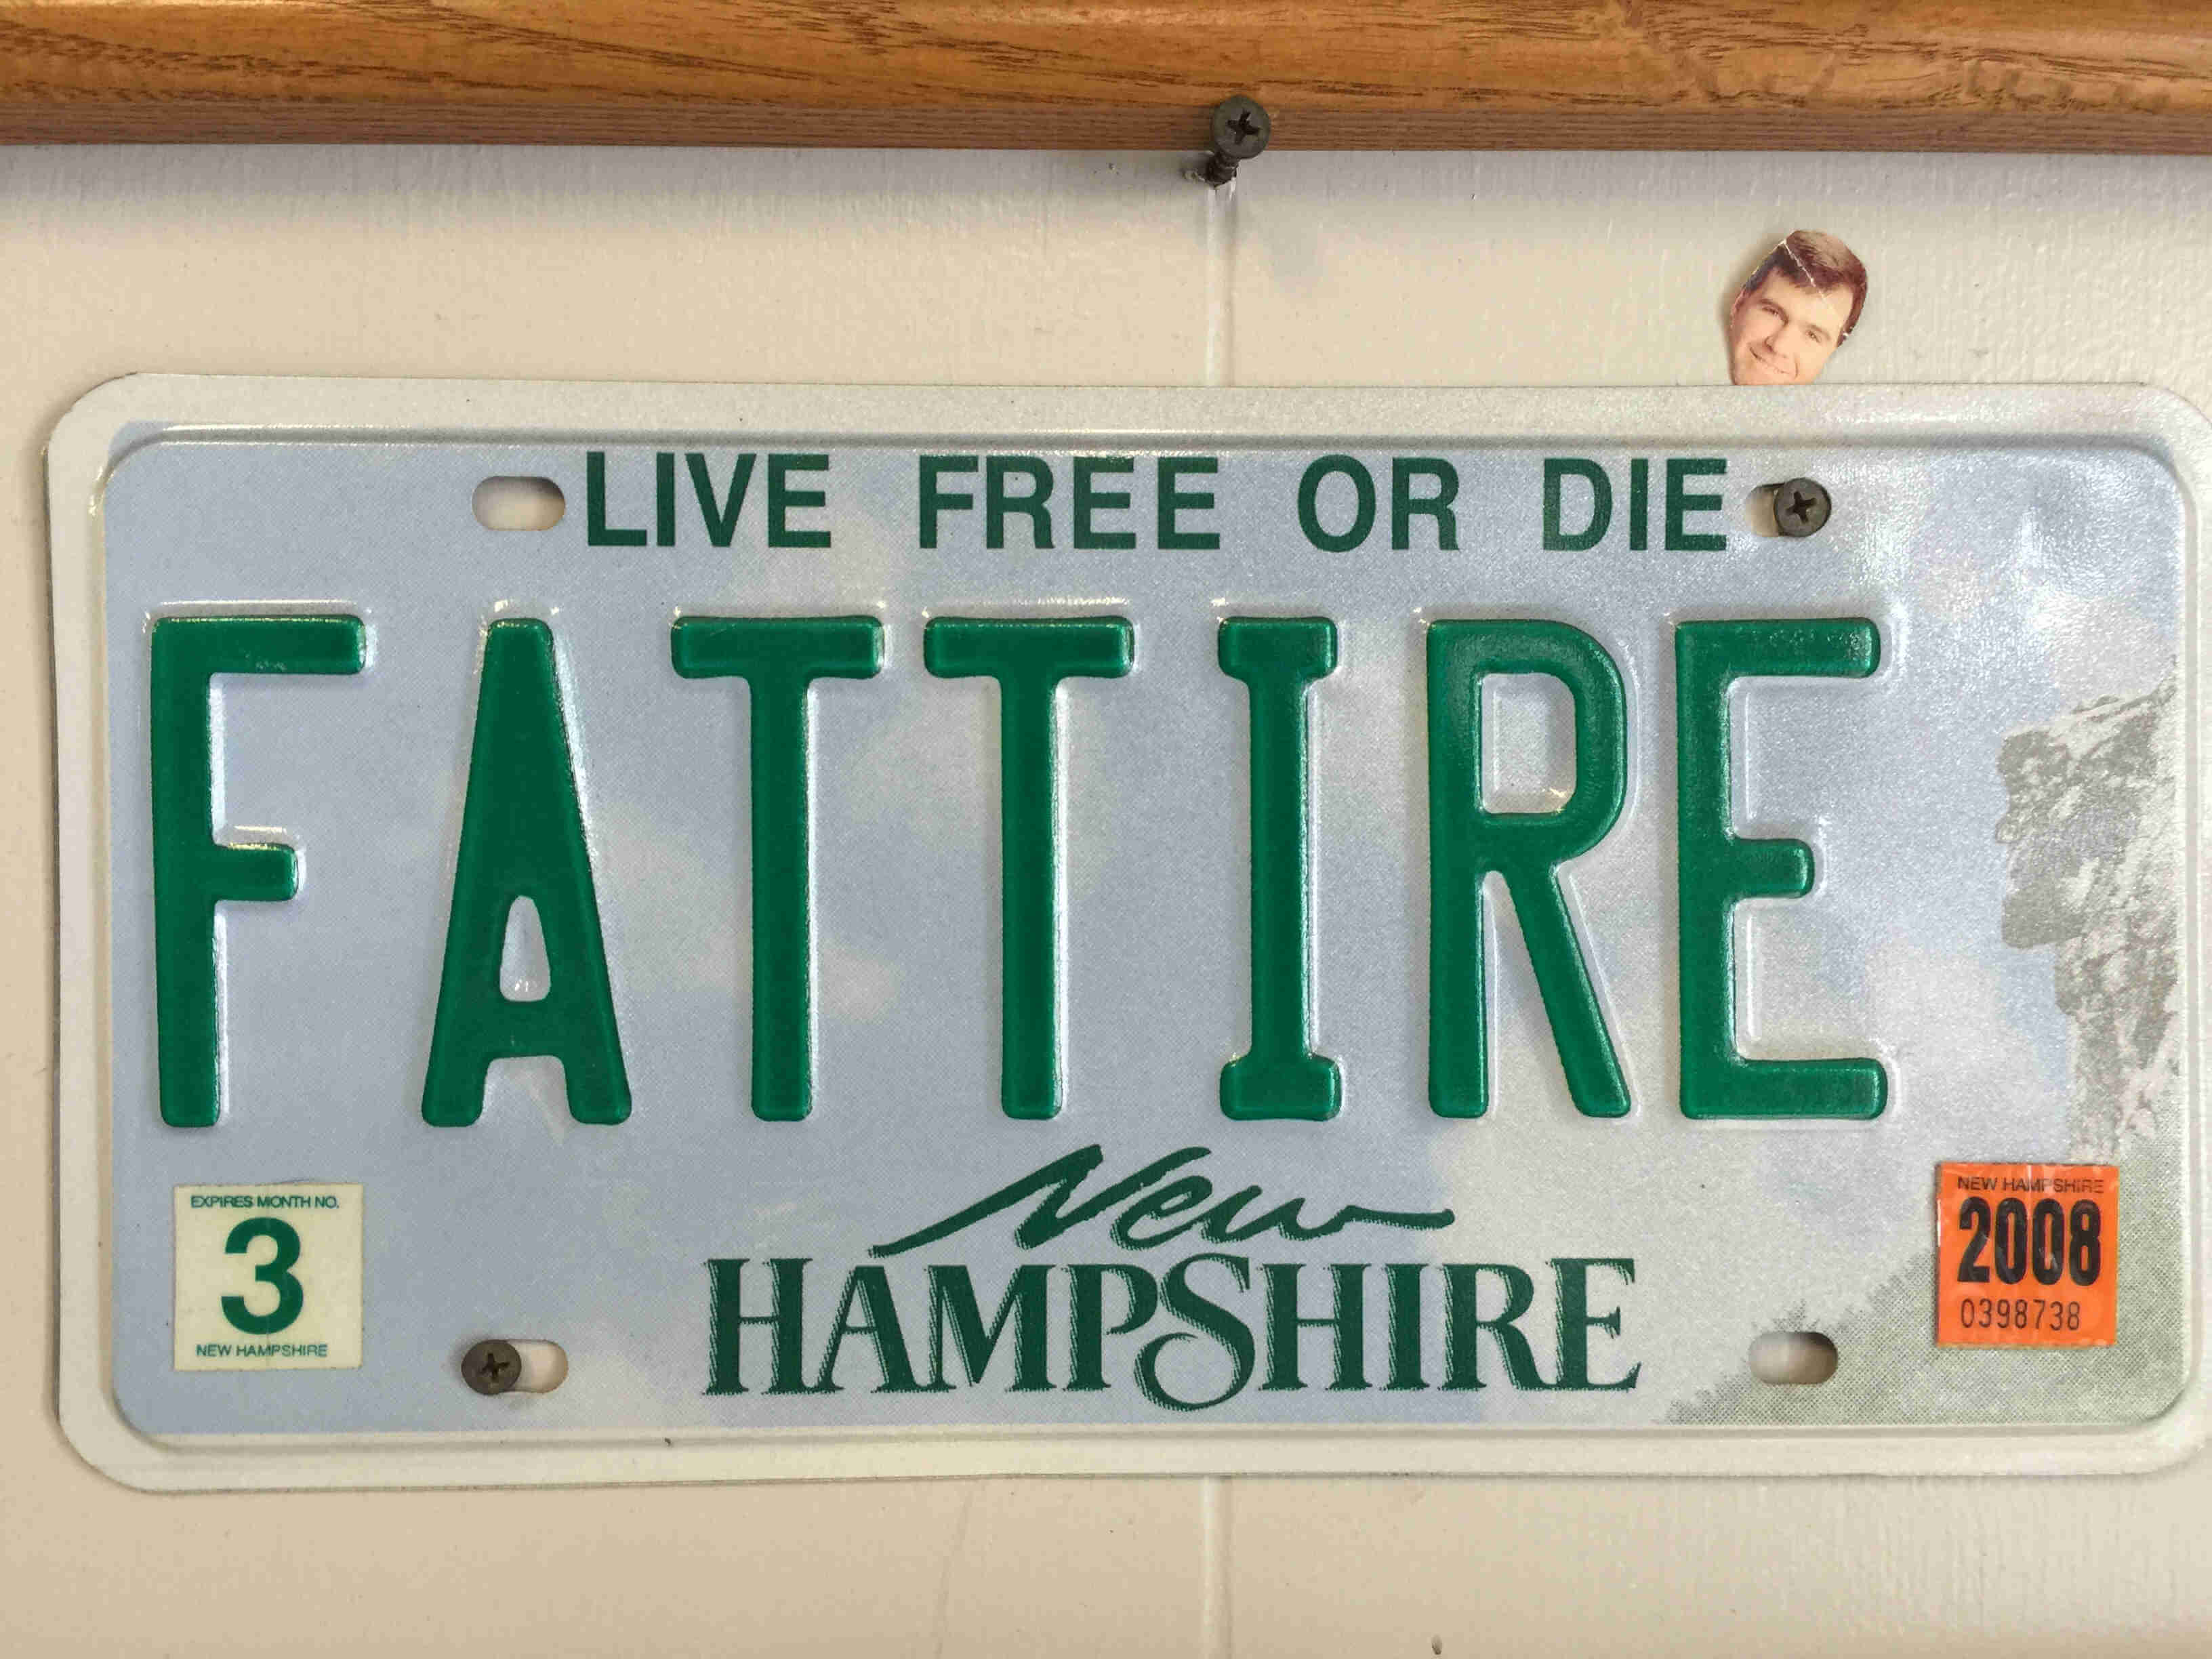 A New Hampshire license plate the shows, FATTIRE